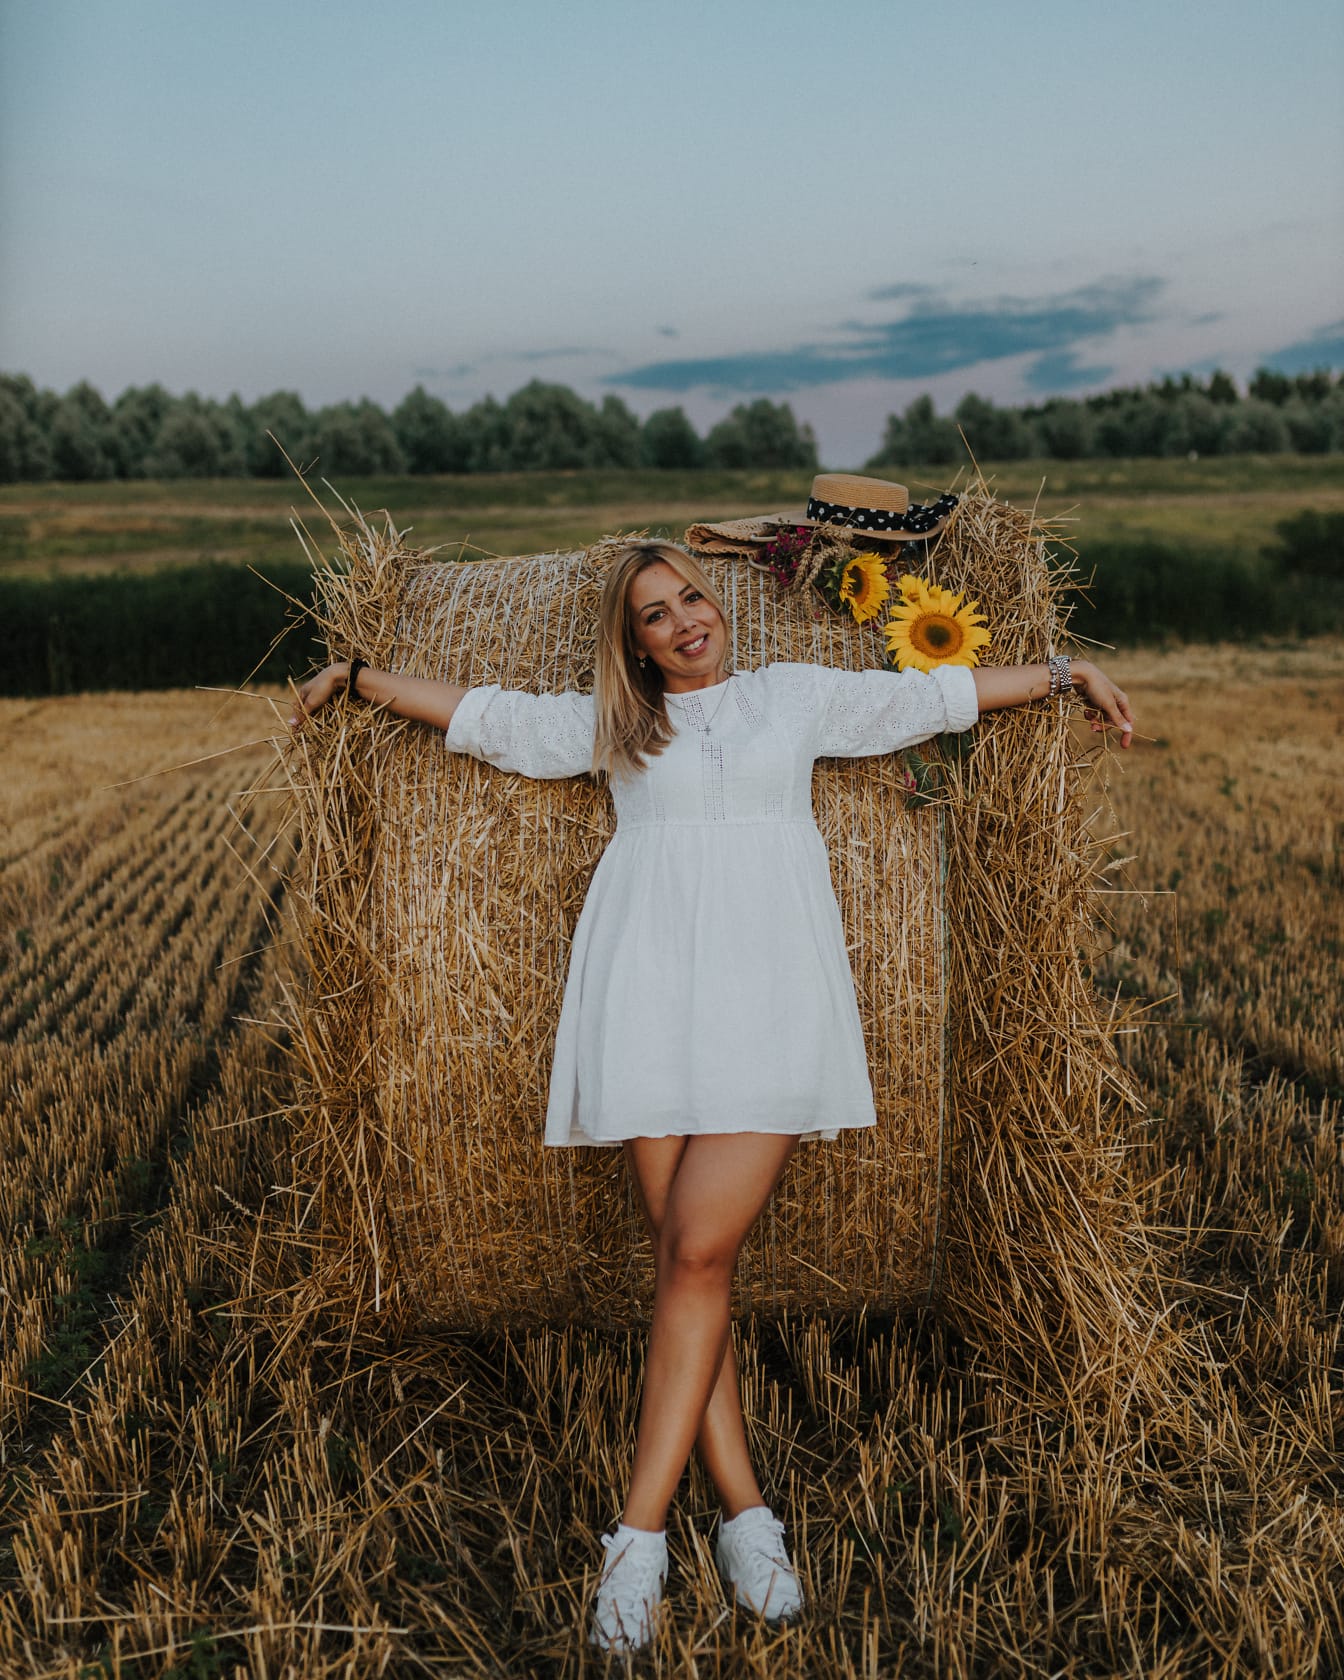 Wanita muda yang sangat cantik berpose dalam gaun putih gaya country bersandar di tumpukan jerami di ladang jerami